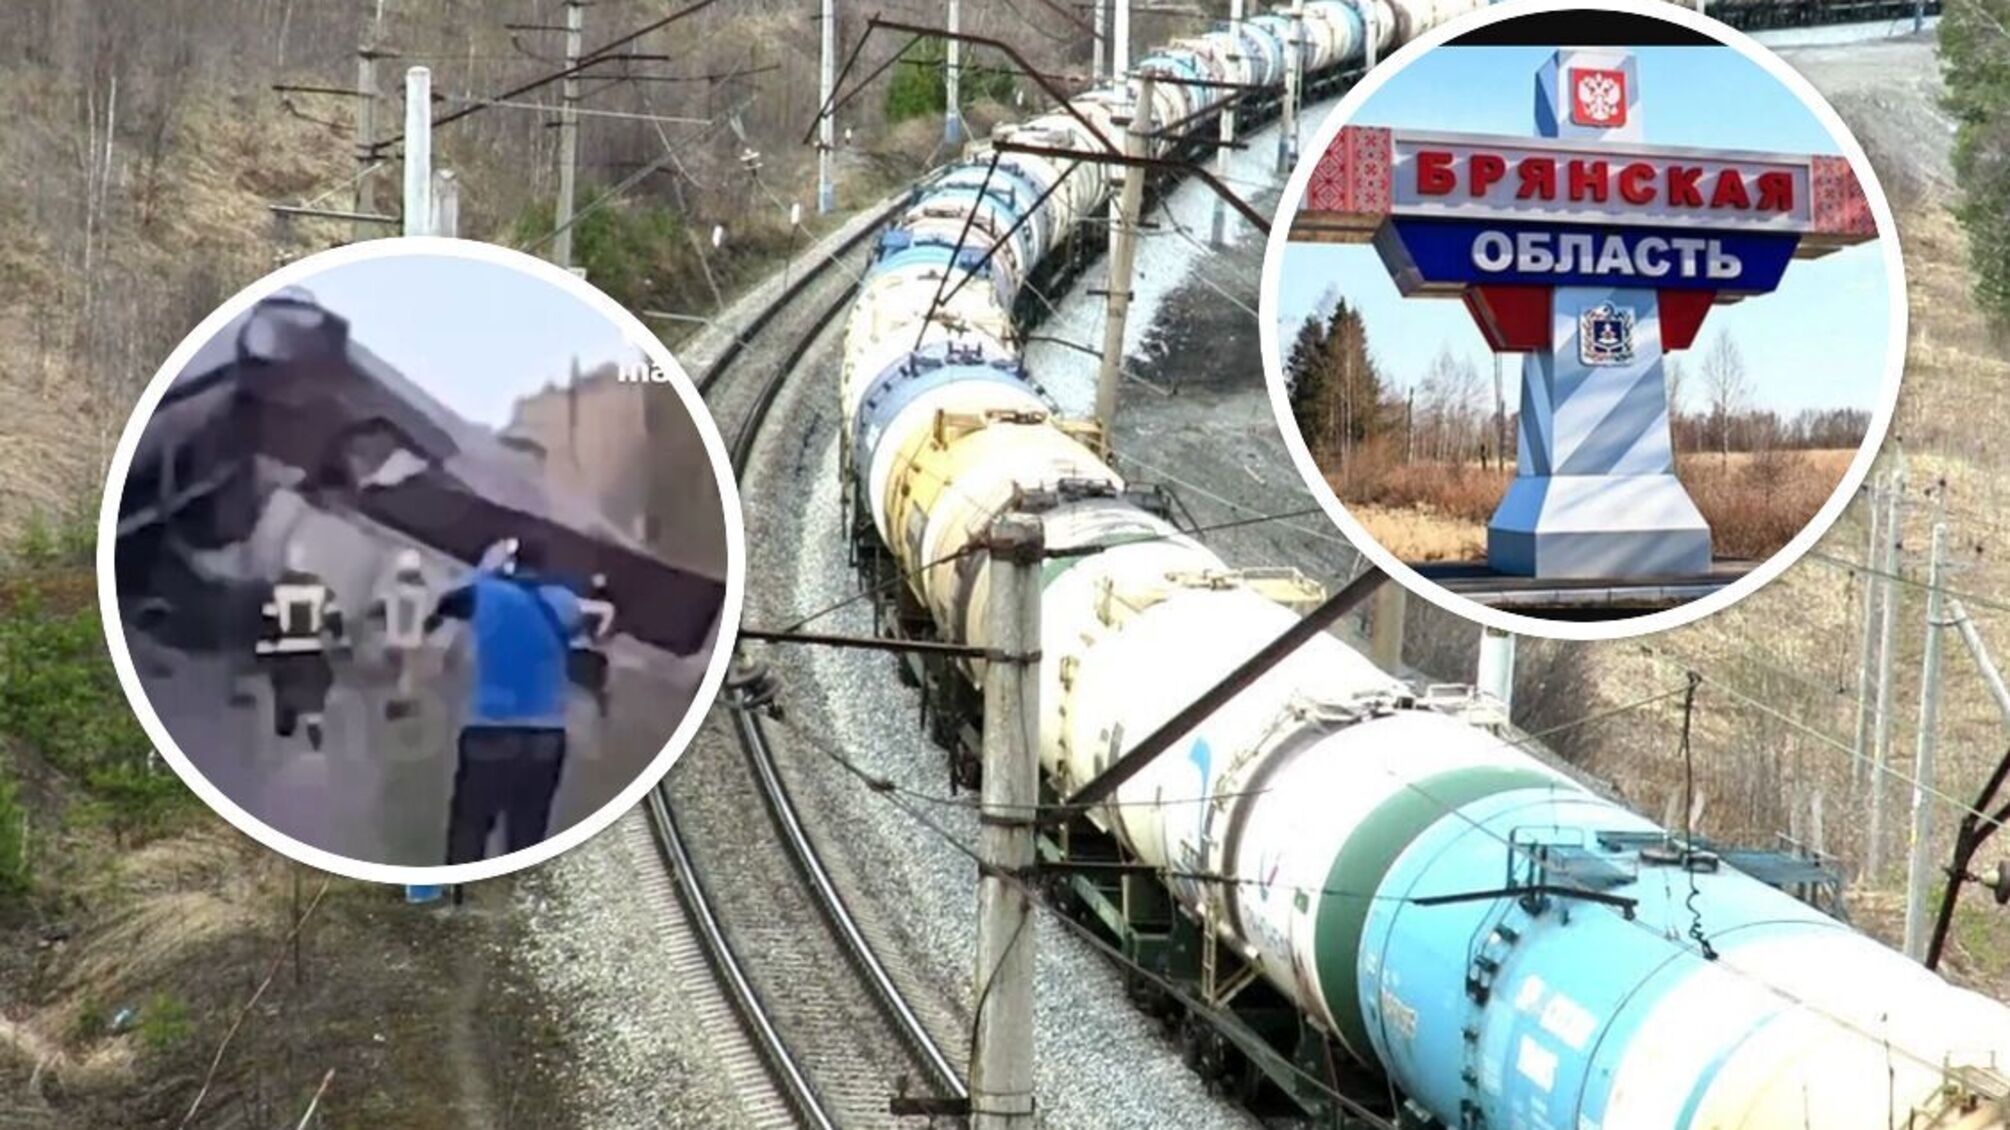 Грузовой поезд с цистернами - ЧП произошло в 7 км от Брянска.